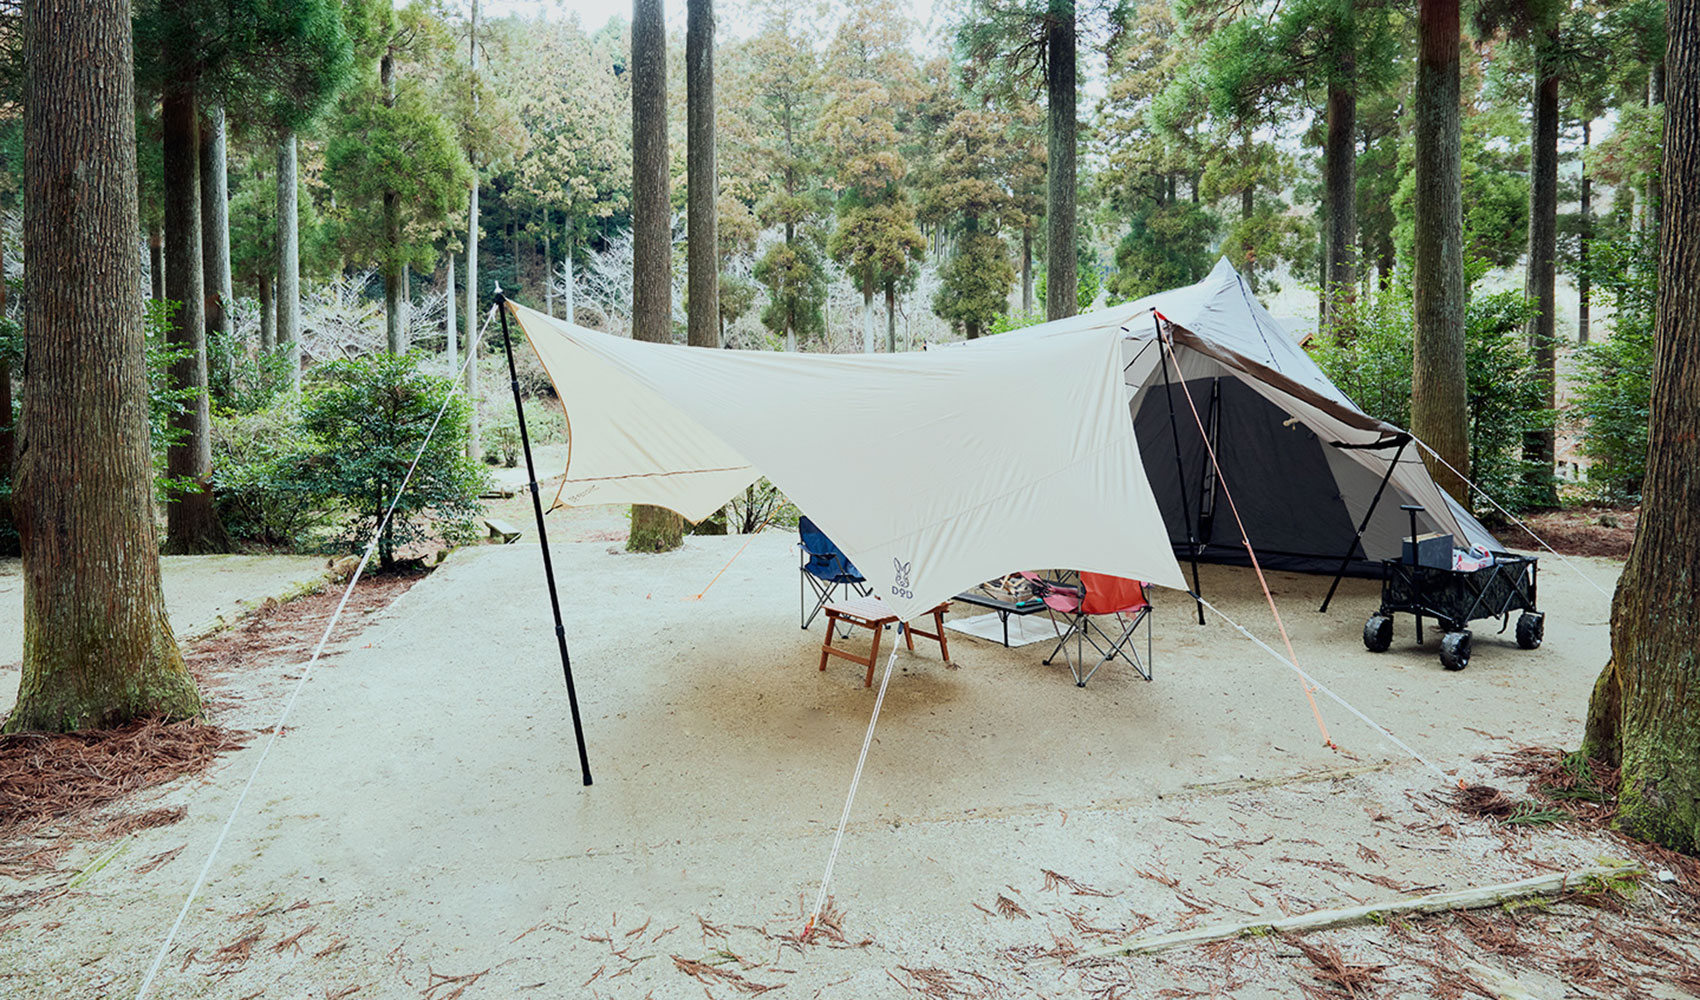 真名子木の香ランドキャンプ場 – 糸島市